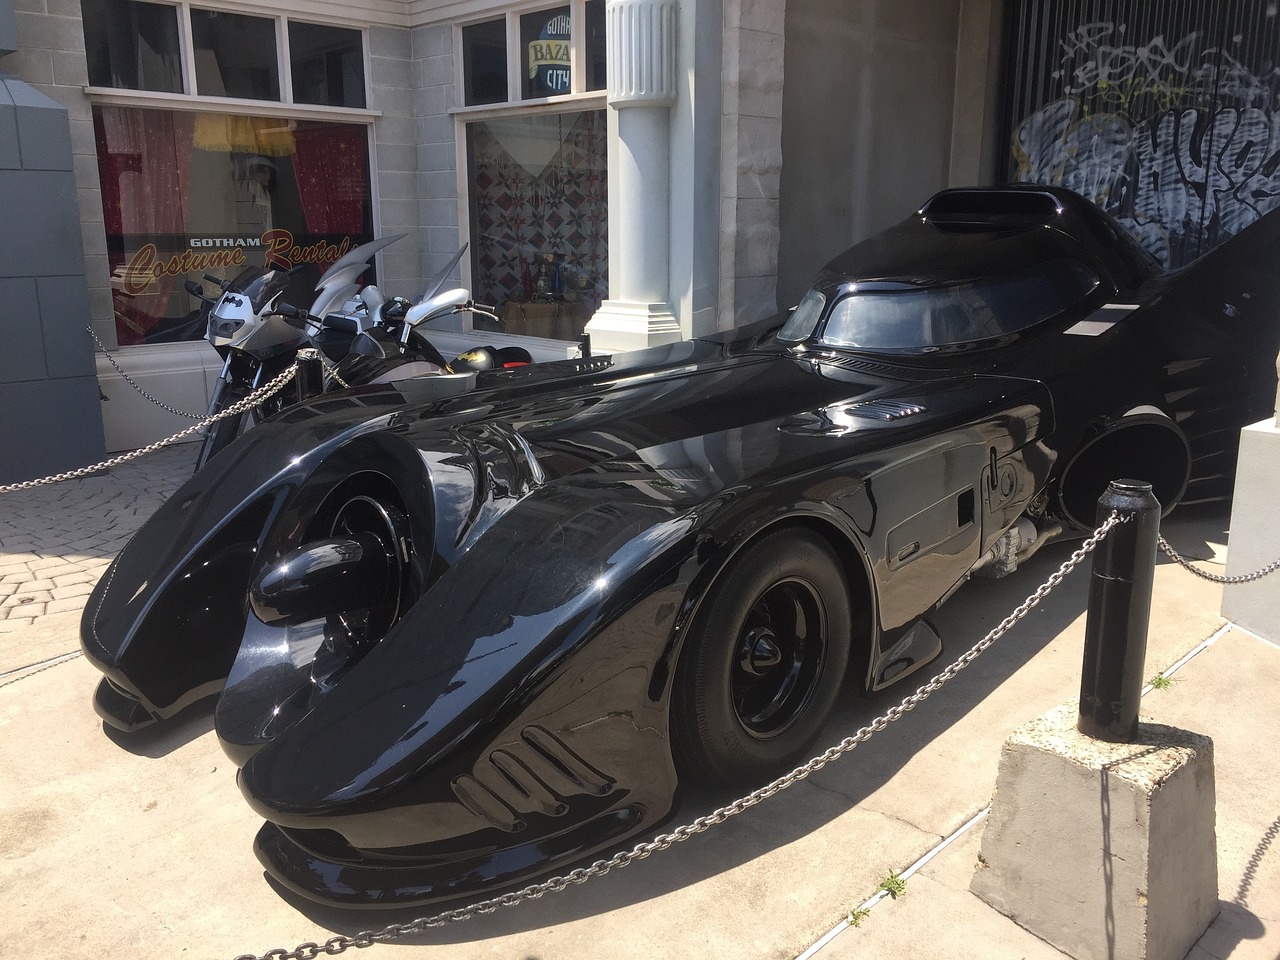 Um dos carros famosos usados em filmes e séries de TV e marcaram gerações, com certeza é o Batmóvel